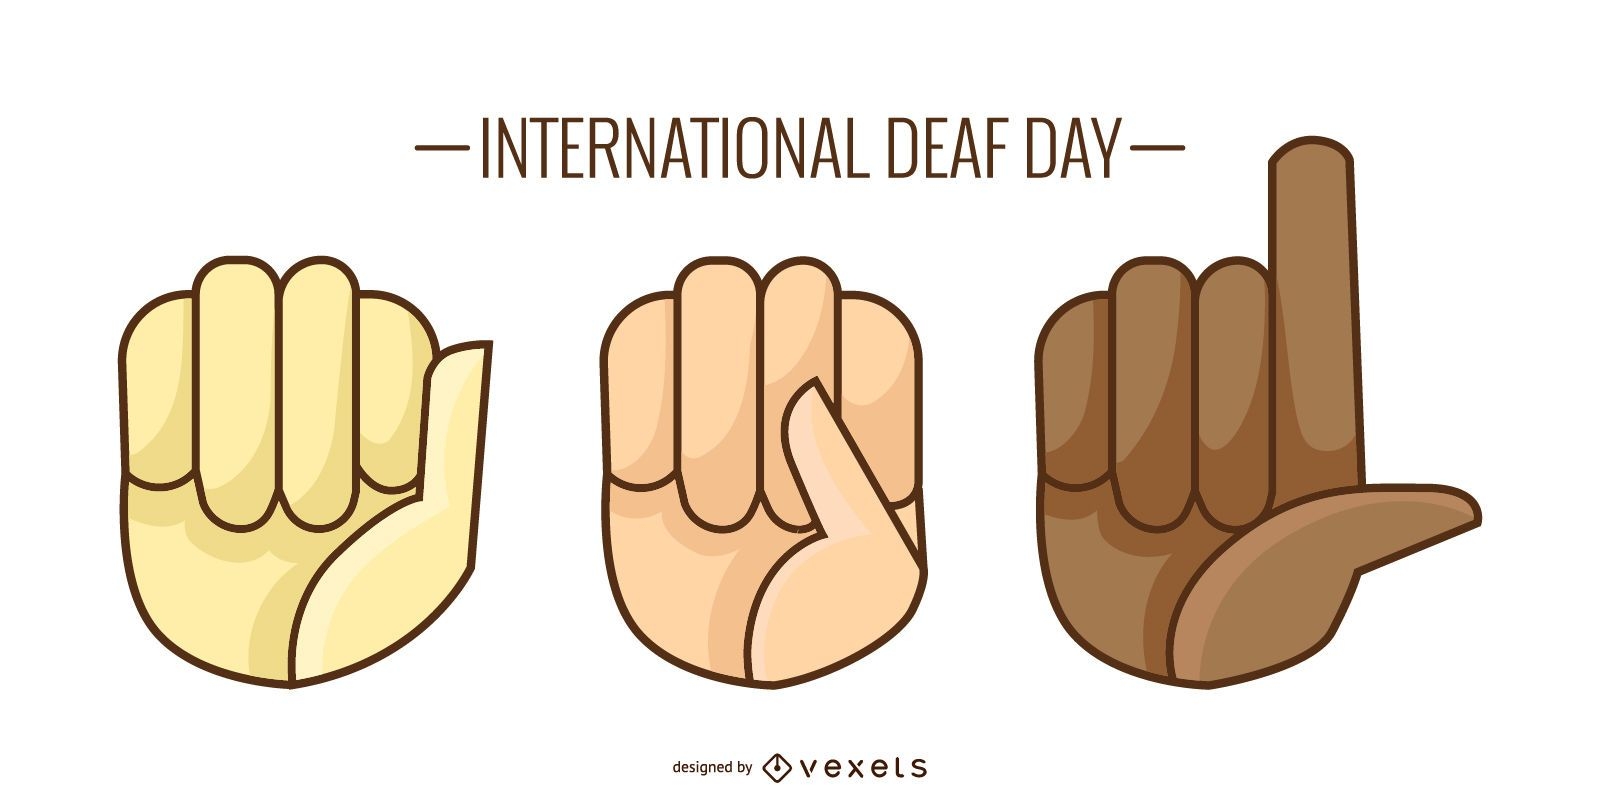 Deaf Day Illustration Design 